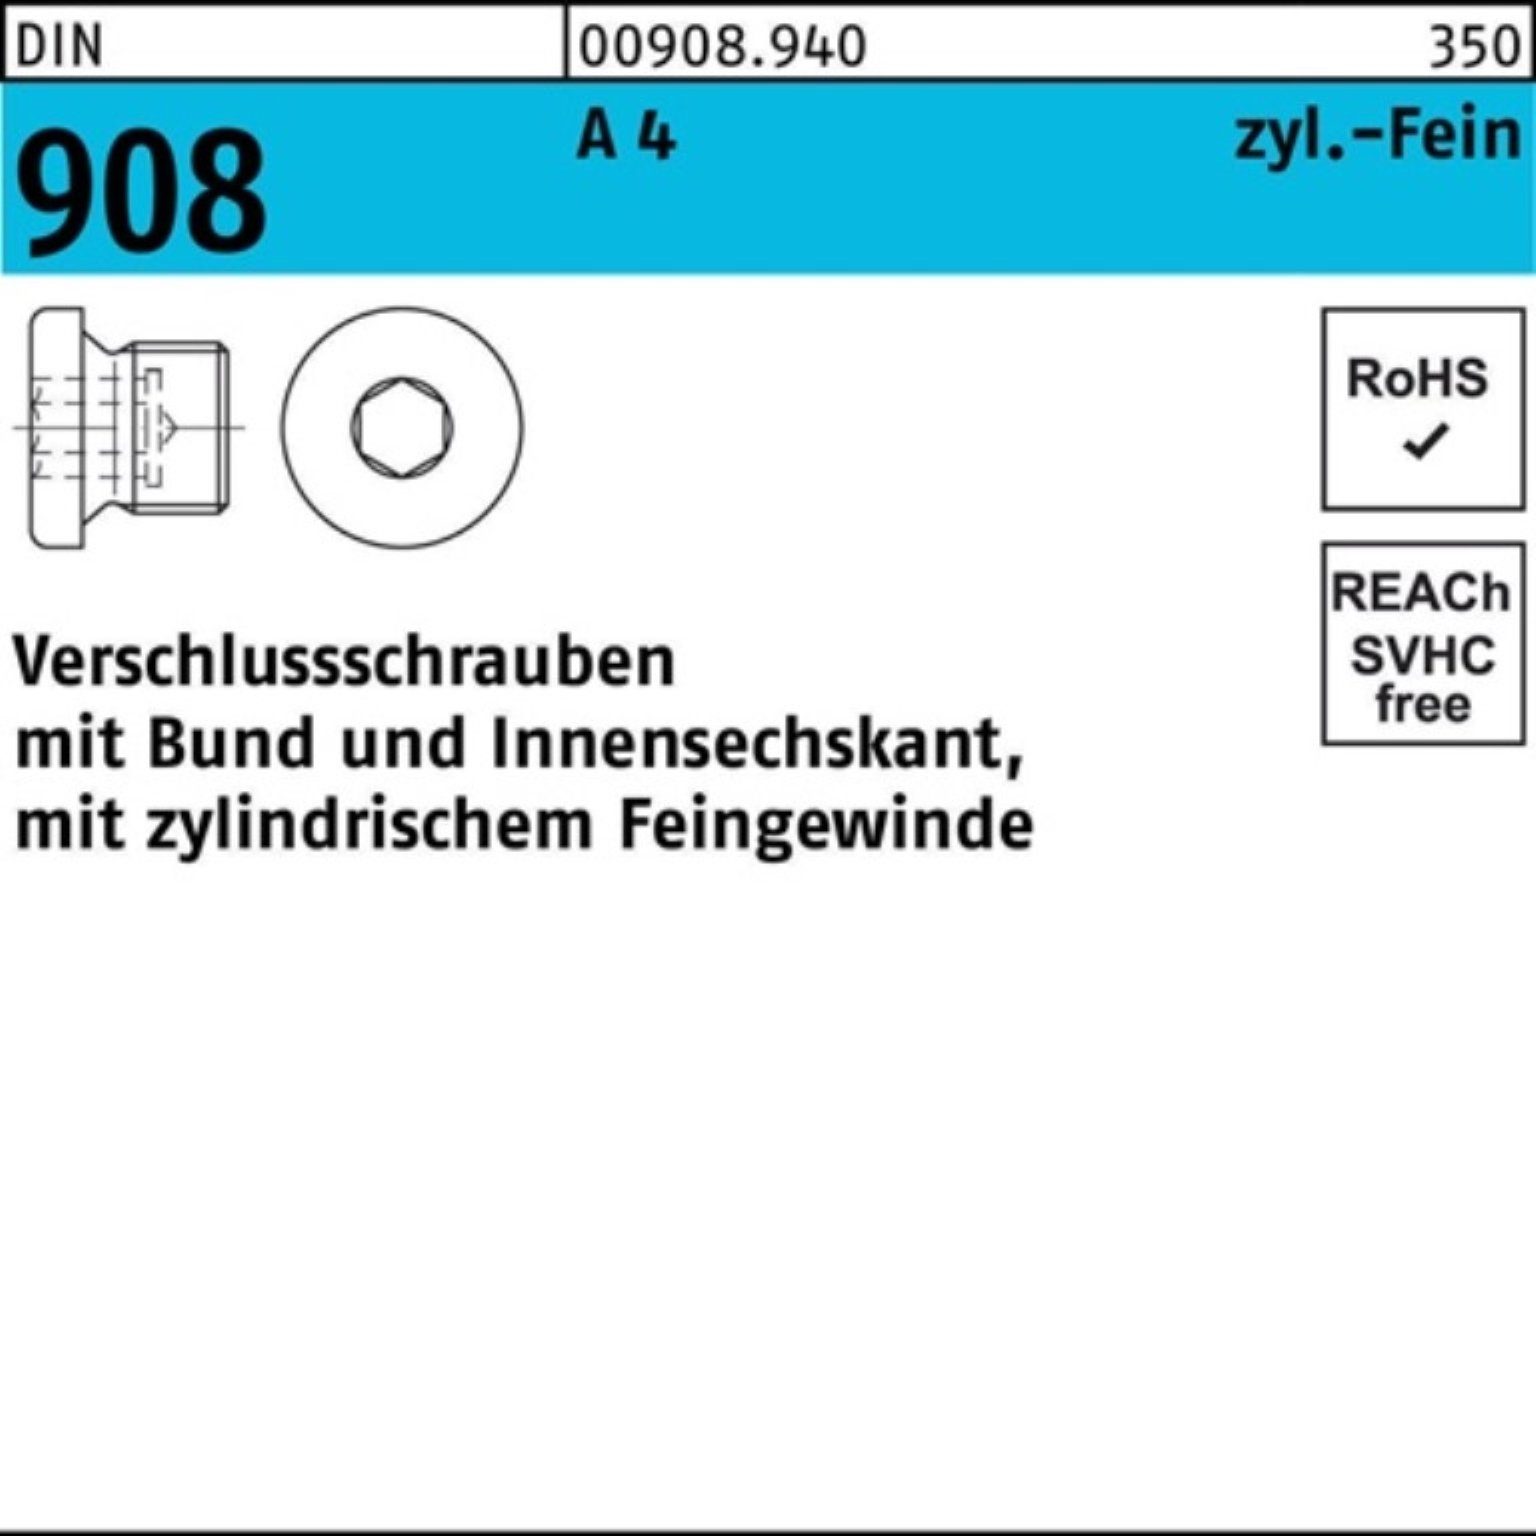 Reyher Schraube 100er Pack 908 St Bund/Innen-6kt 1 Verschlußschraube M8x A 4 DIN 100